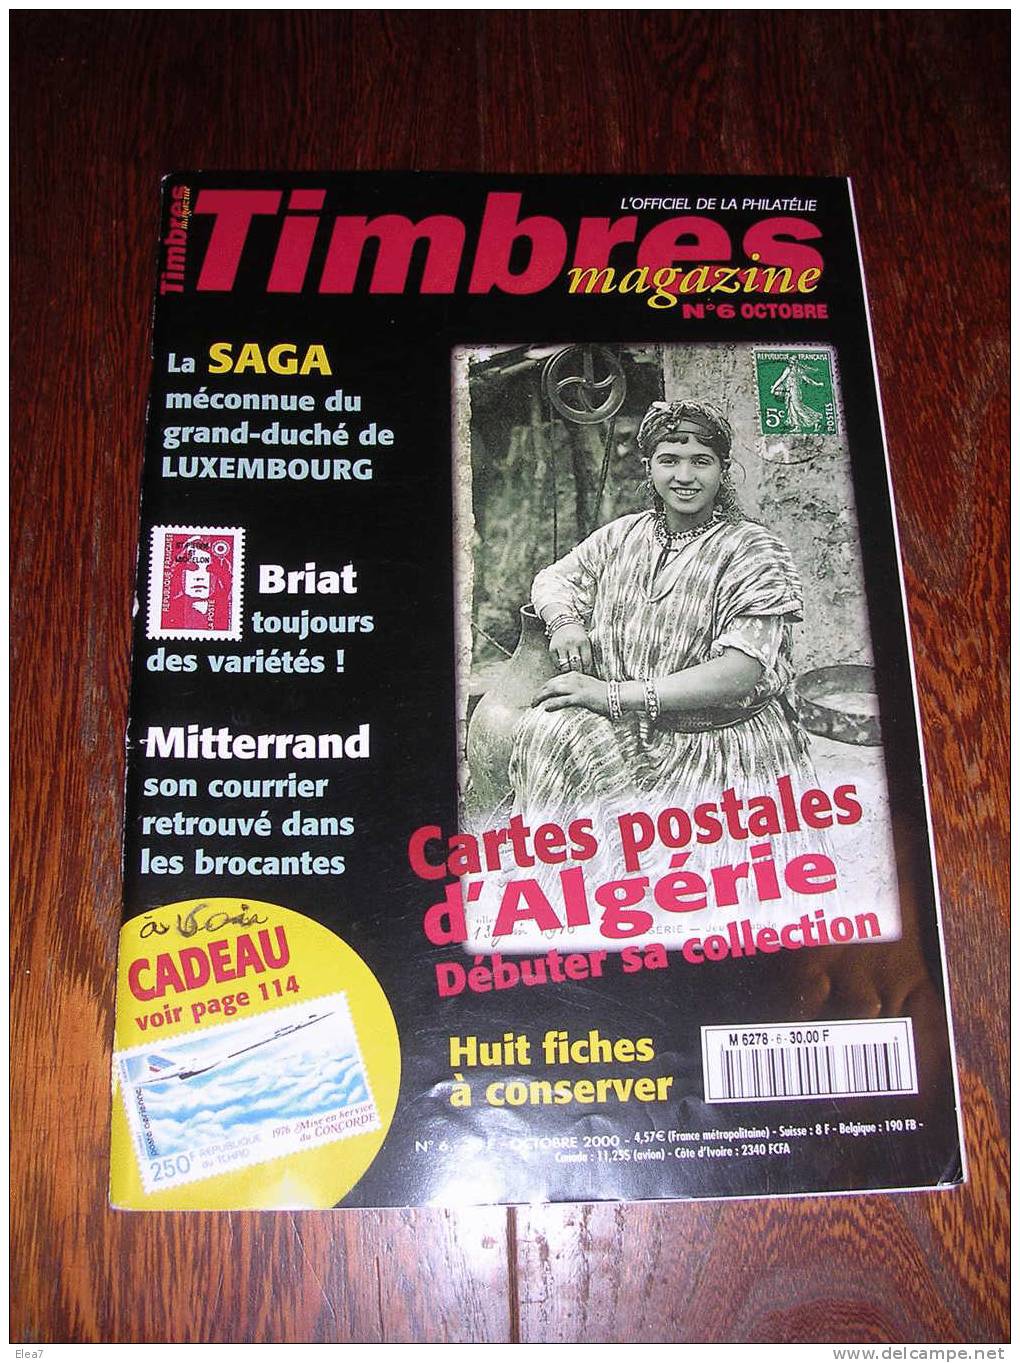 TIMBRES MAGAZINE - N°6 Octobre 2000 - Français (àpd. 1941)